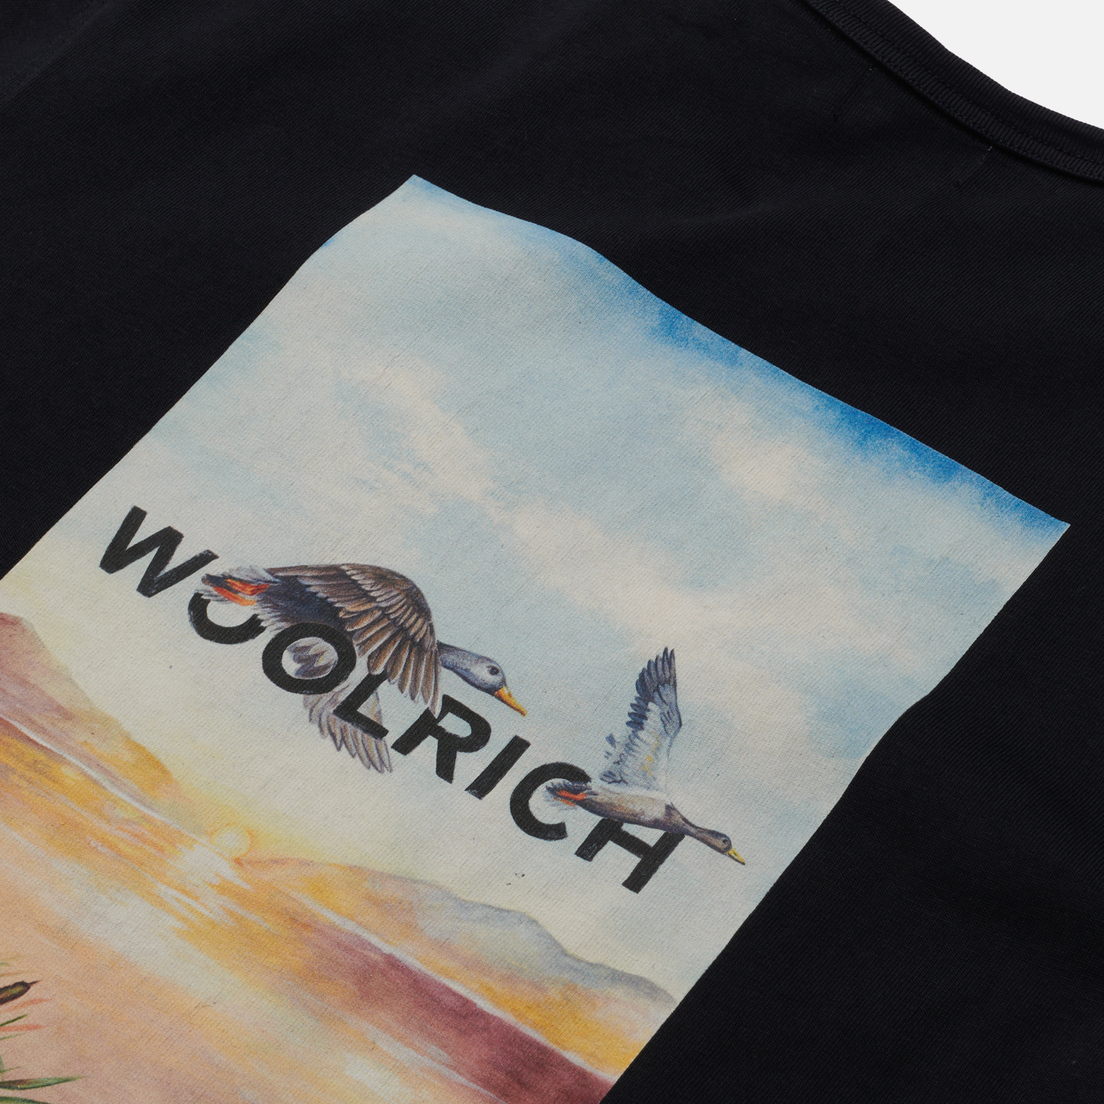 Woolrich Мужская футболка Outdoor